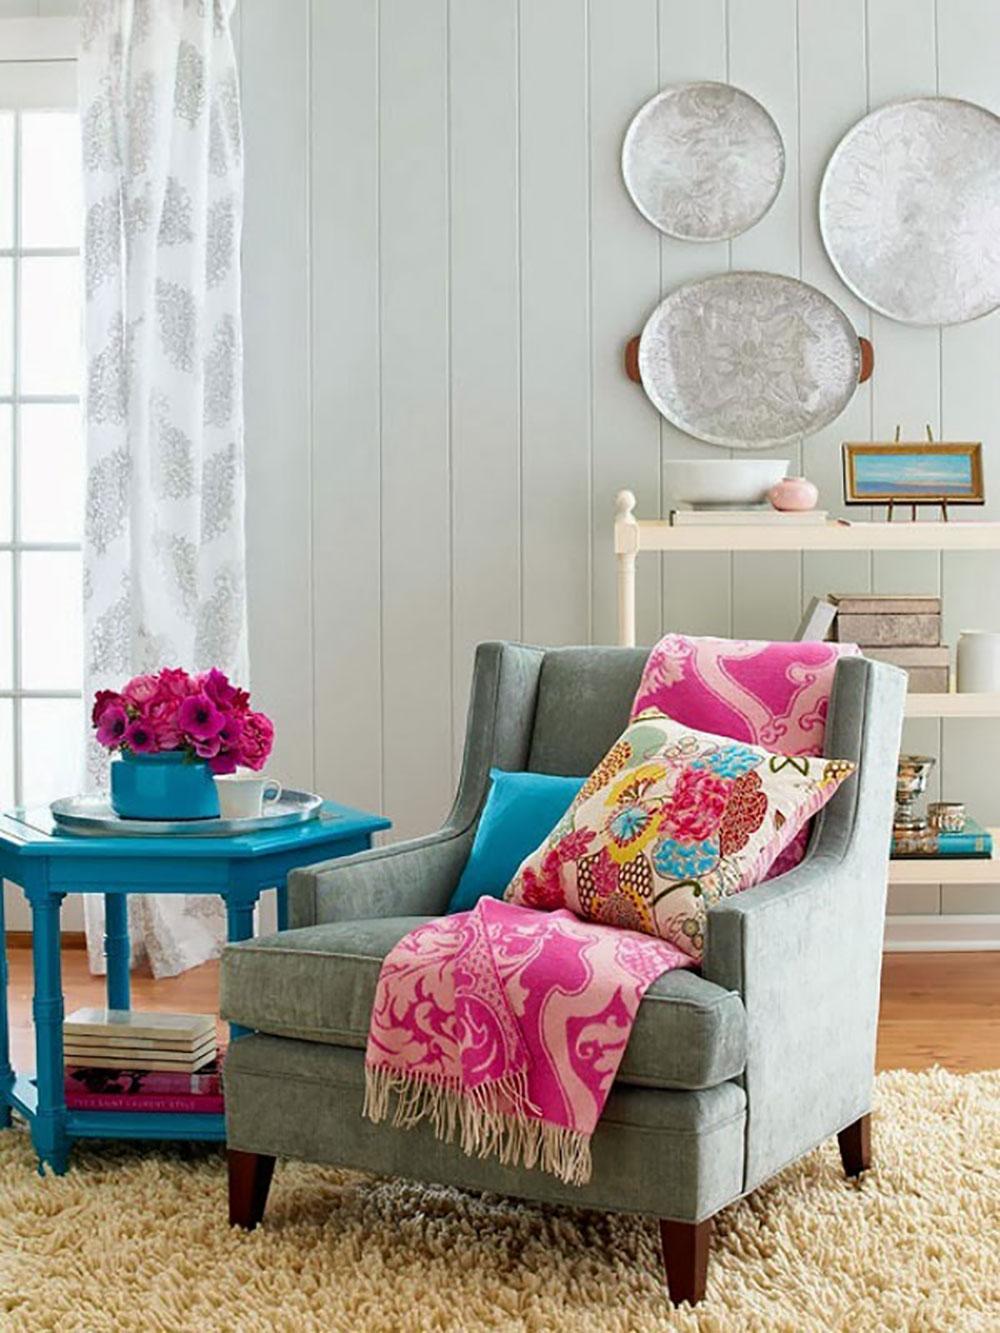 Gemütliche Sitzecke mit Farbtupfern #beistelltisch #wohnzimmer #sessel #sitzecke #dekoidee #leseecke ©http://www.spaaz.de/lookbook/Spaaz-de/Die-schoensten-Wohnzimmer-Inspirationen